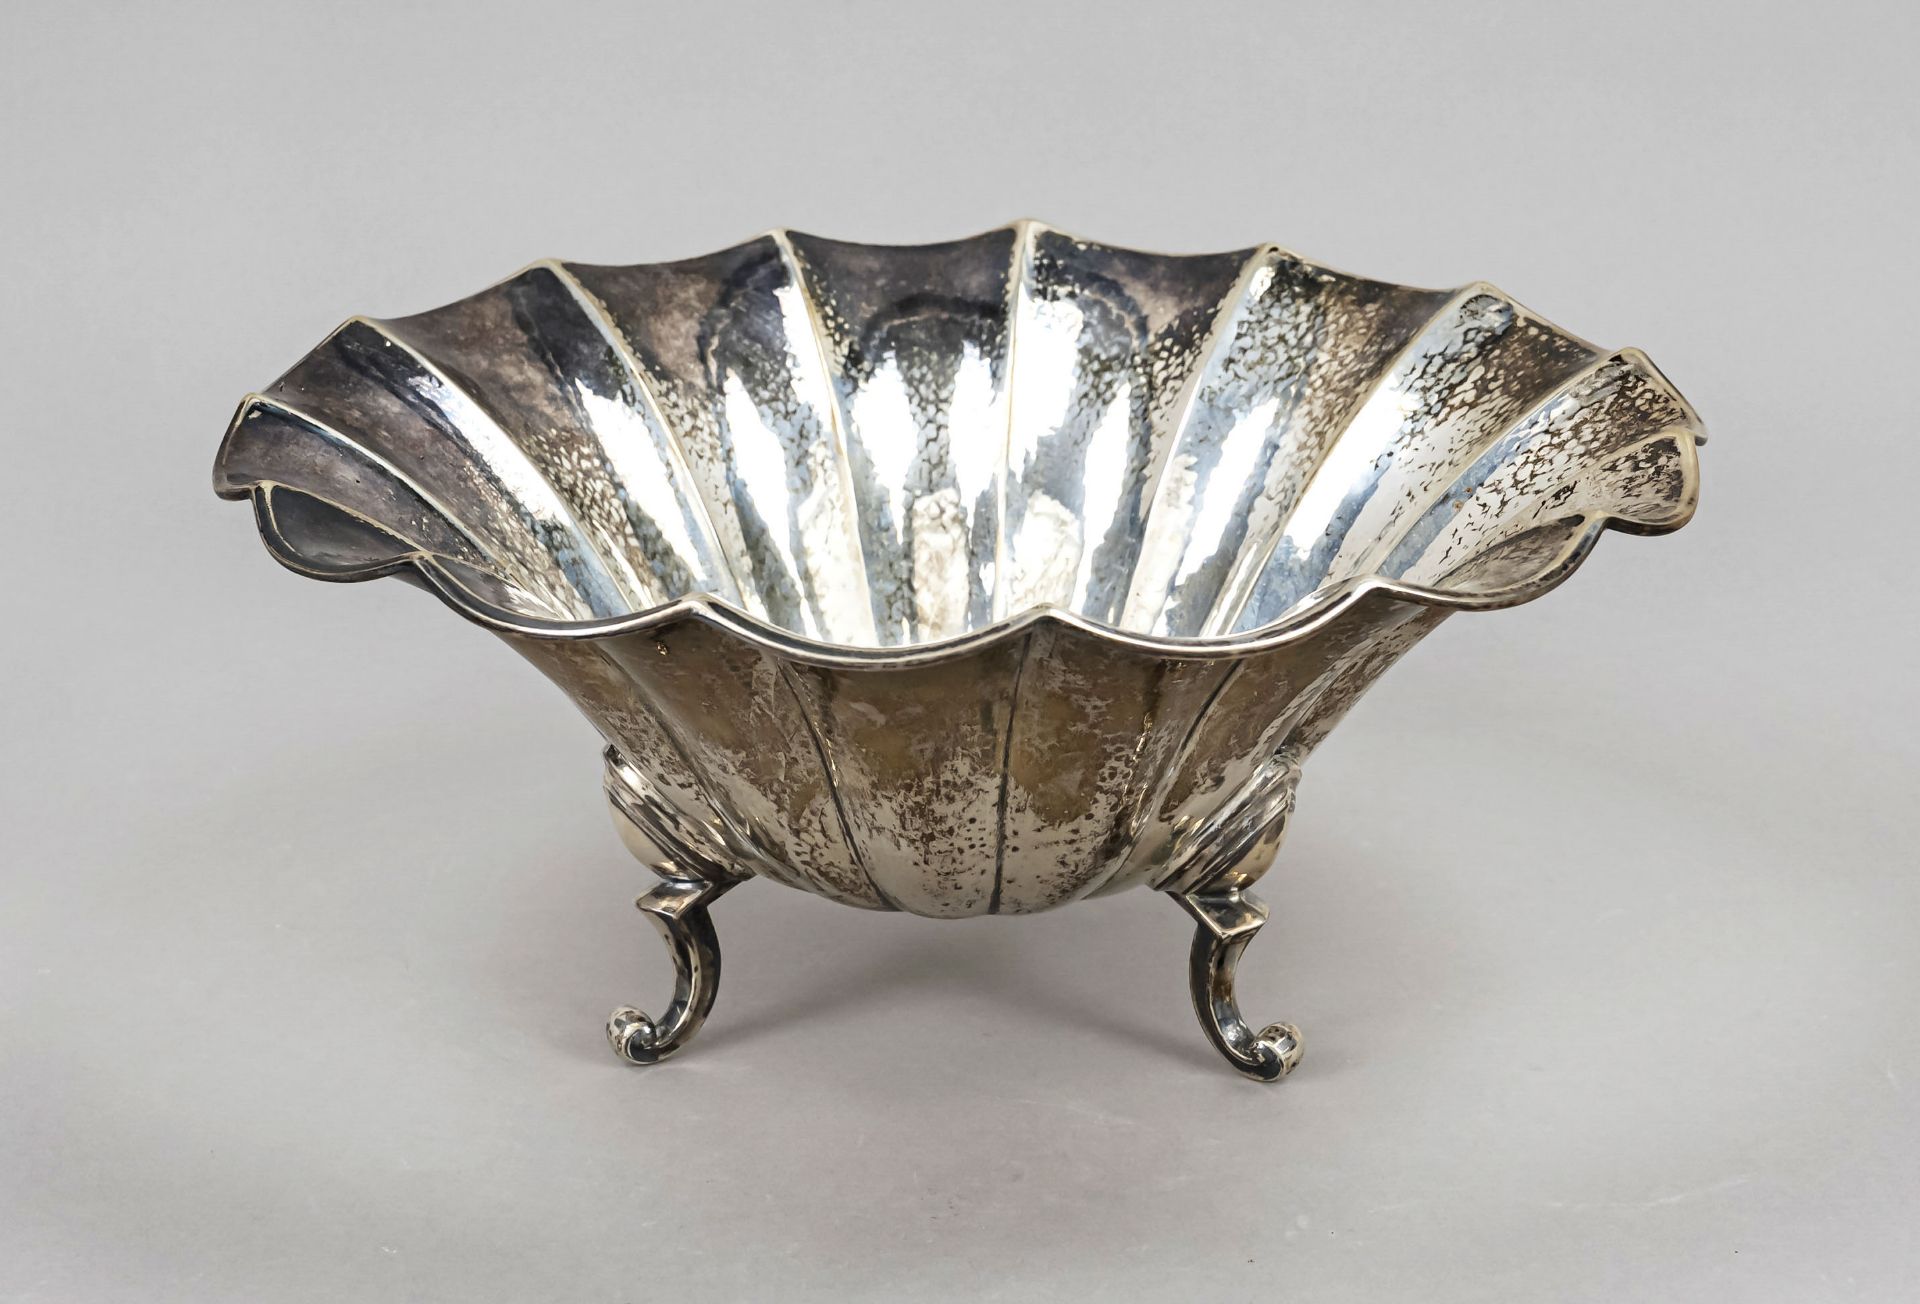 A round Art Deco bowl, c. 1930, maker's mark Gebr. Kühn, Schwäbisch Gmünd, jeweler's mark B. Knauer,